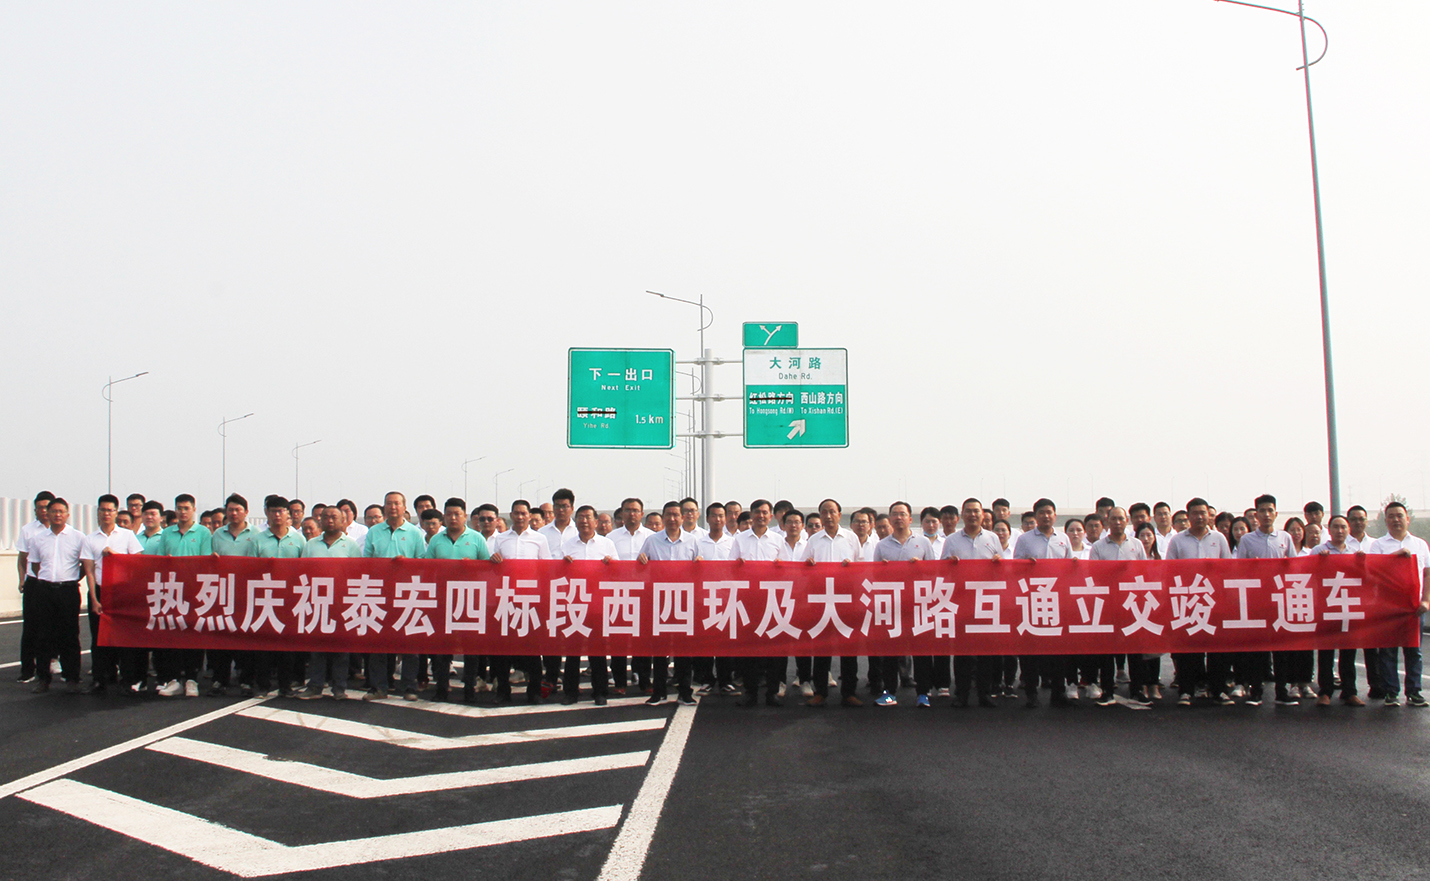 热烈祝贺郑州四环线快速化工程主线通车仪式在公司四标段成功举行